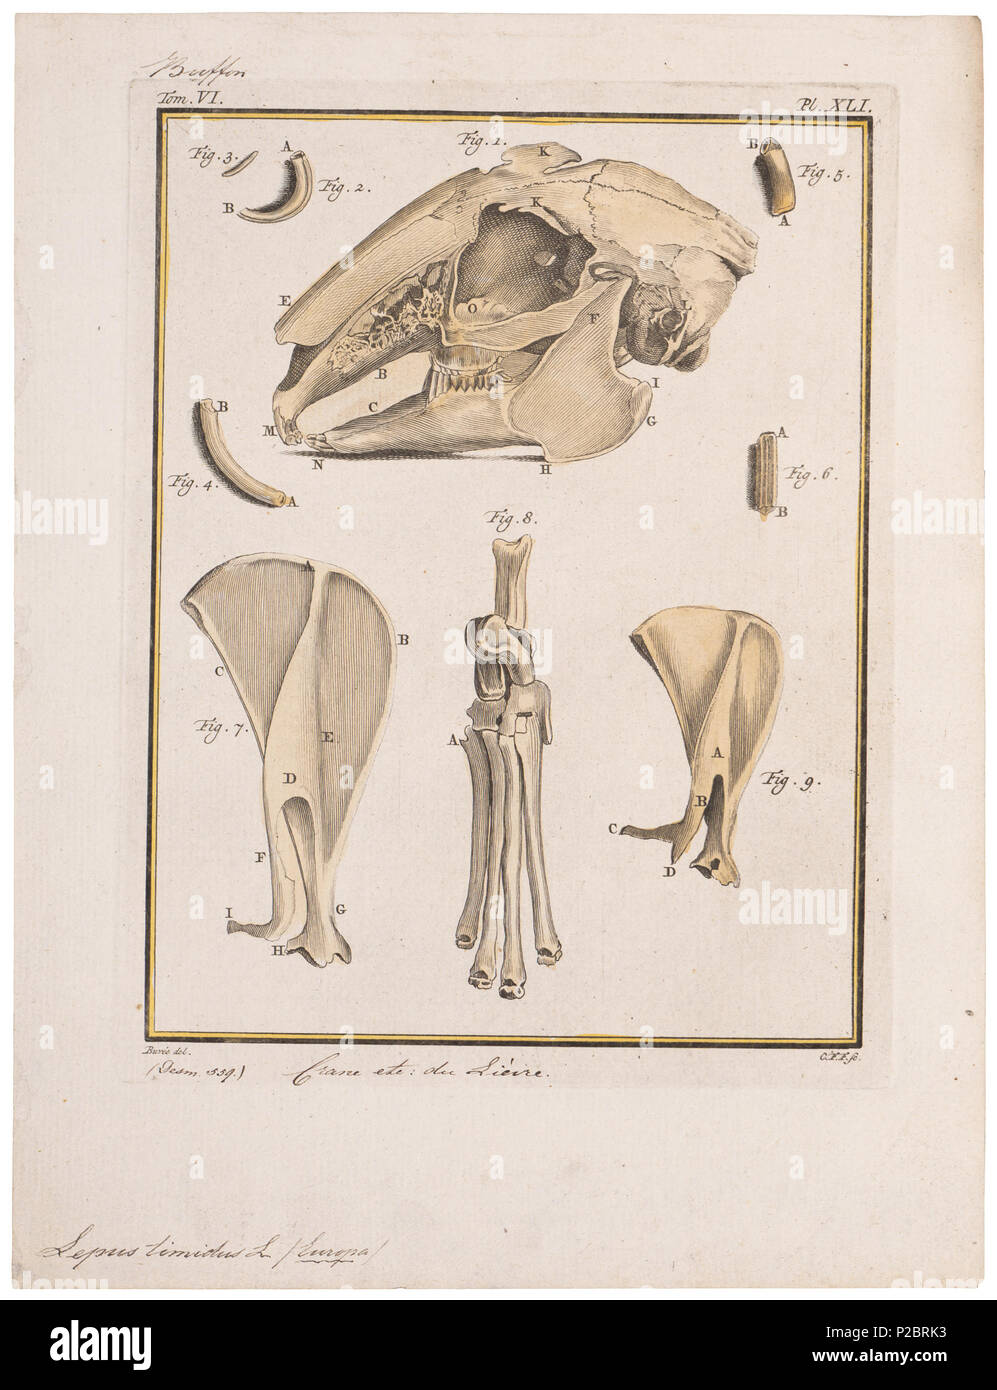 . Lepus timidus - skeletdelen . between 1700 and 1880 UBA01 IZ20600213, 16-11-09, 14:25,  8C, 3280x2611 (2329+373), 100%%%%, BasisCurve Art, 1/160 s, R40.3, G10.1, B6.5 174 Lepus timidus - skeletdelen - 1700-1880 - Print - Iconographia Zoologica - Special Collections University of Amsterdam - UBA01 IZ20600213 Stock Photo